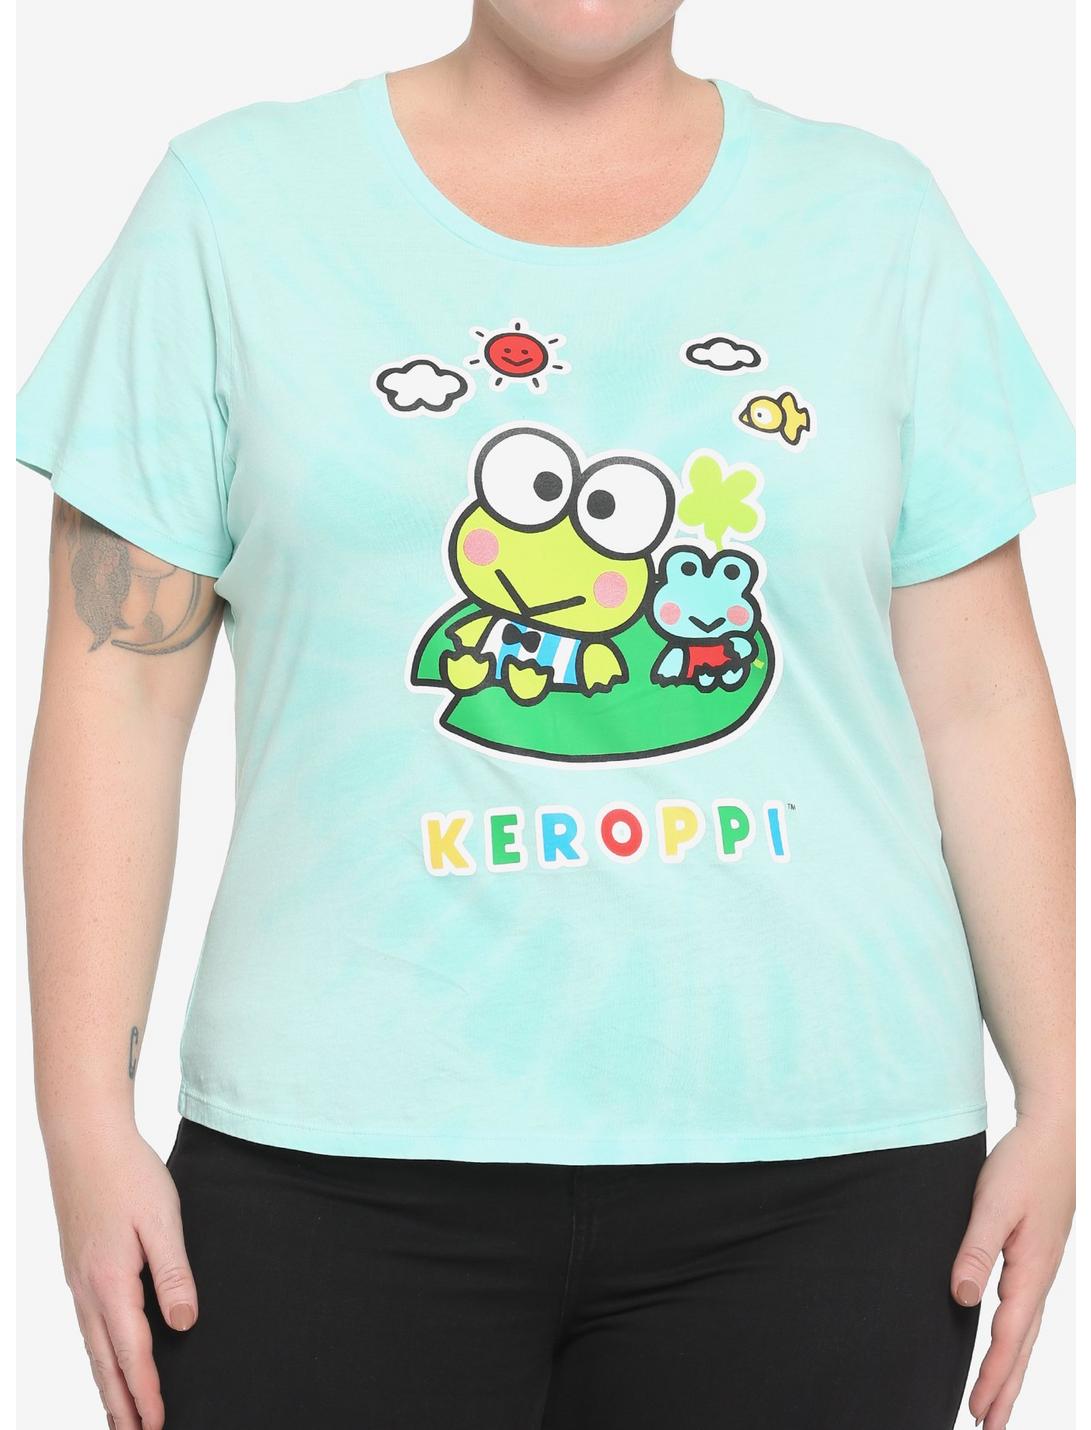 Keroppi Green Tie-Dye Girls Baby T-Shirt Plus Size, MULTI, hi-res